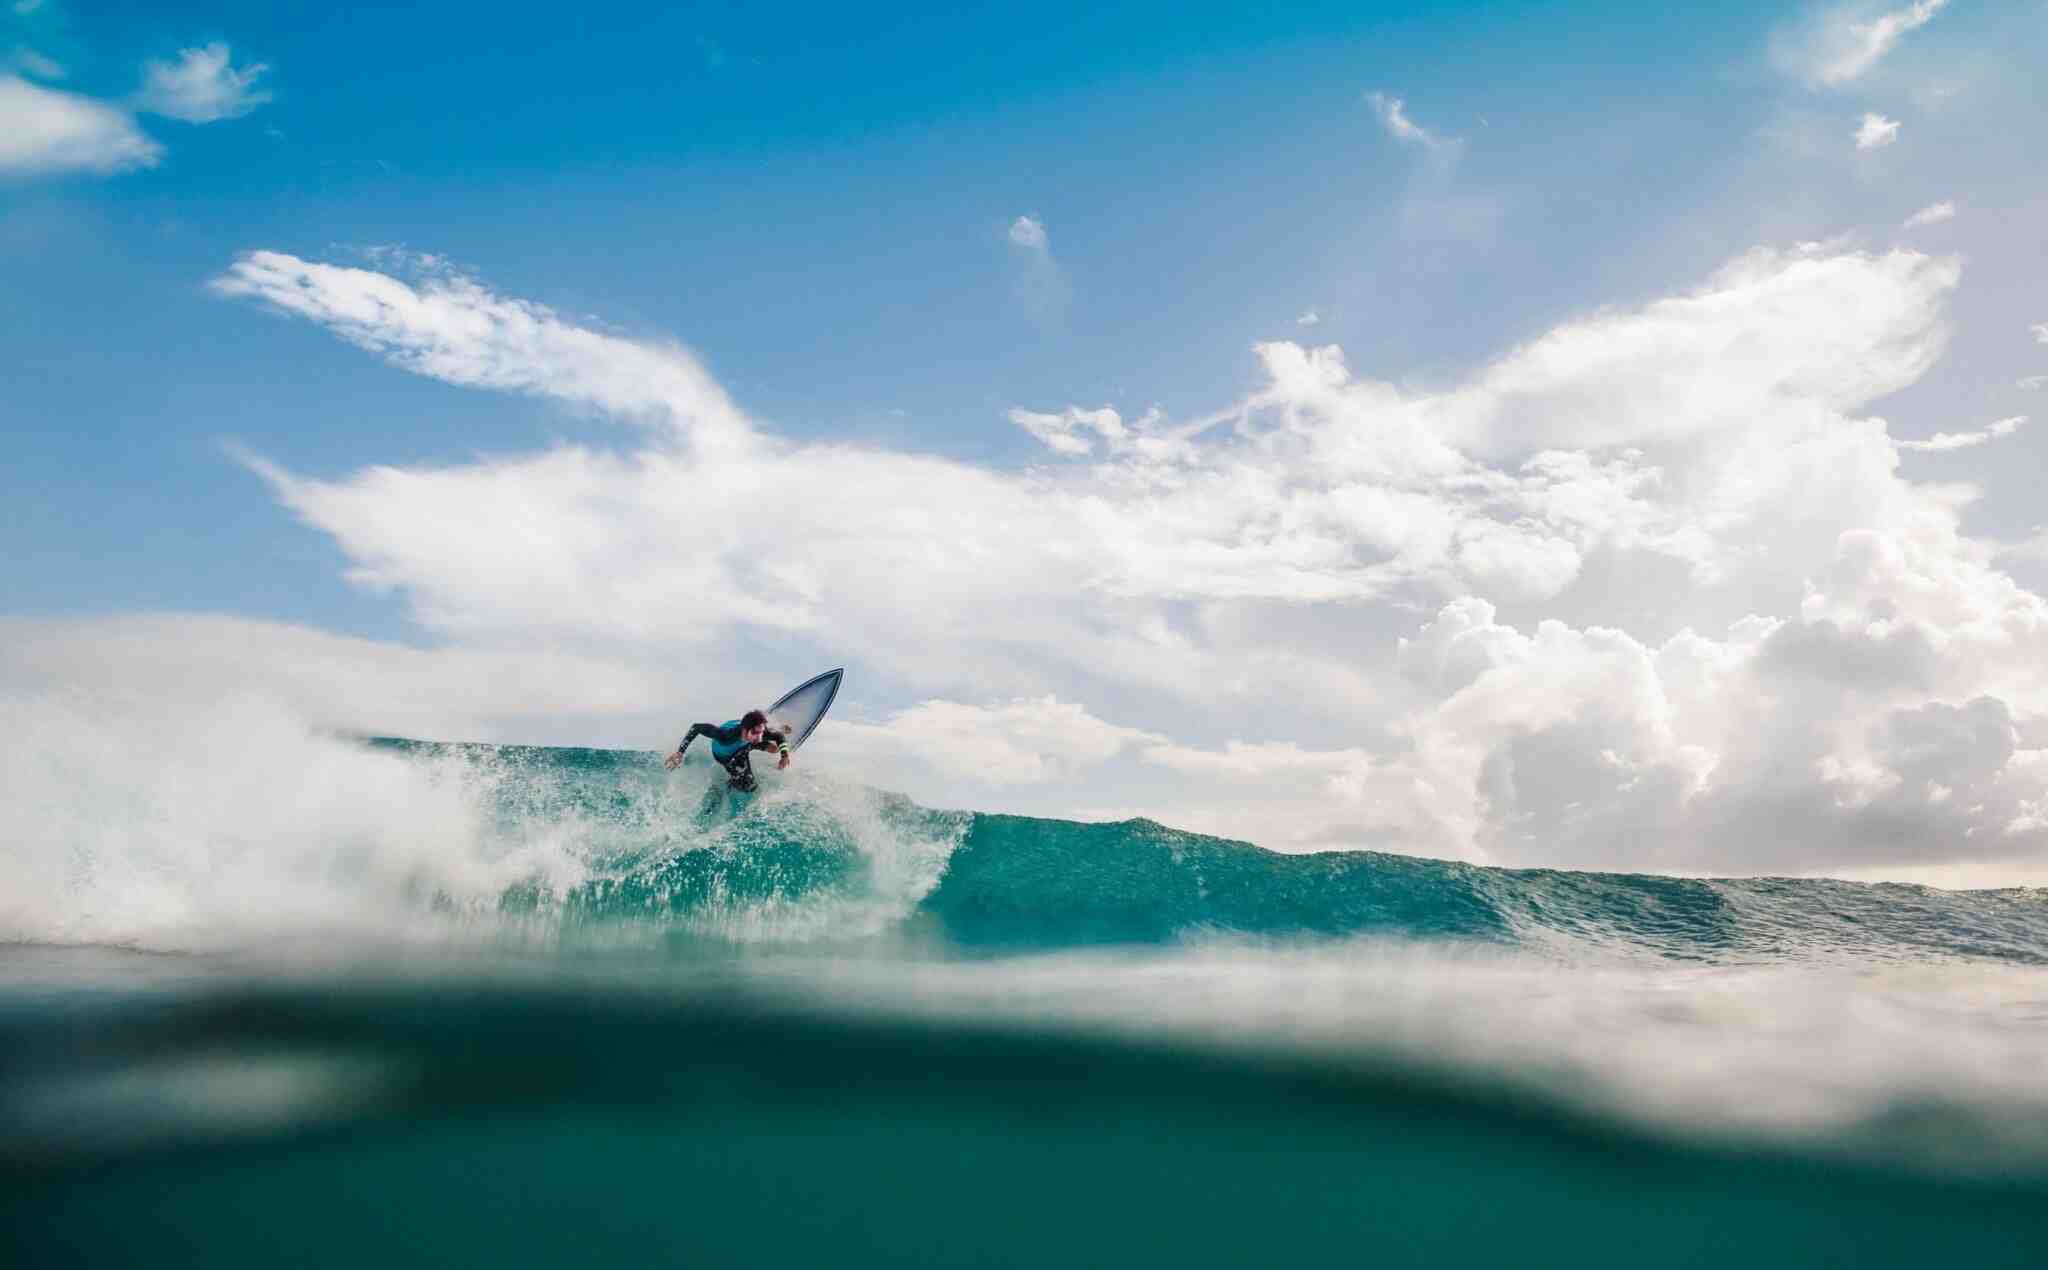 Comment ne pas avoir peur en surf ?